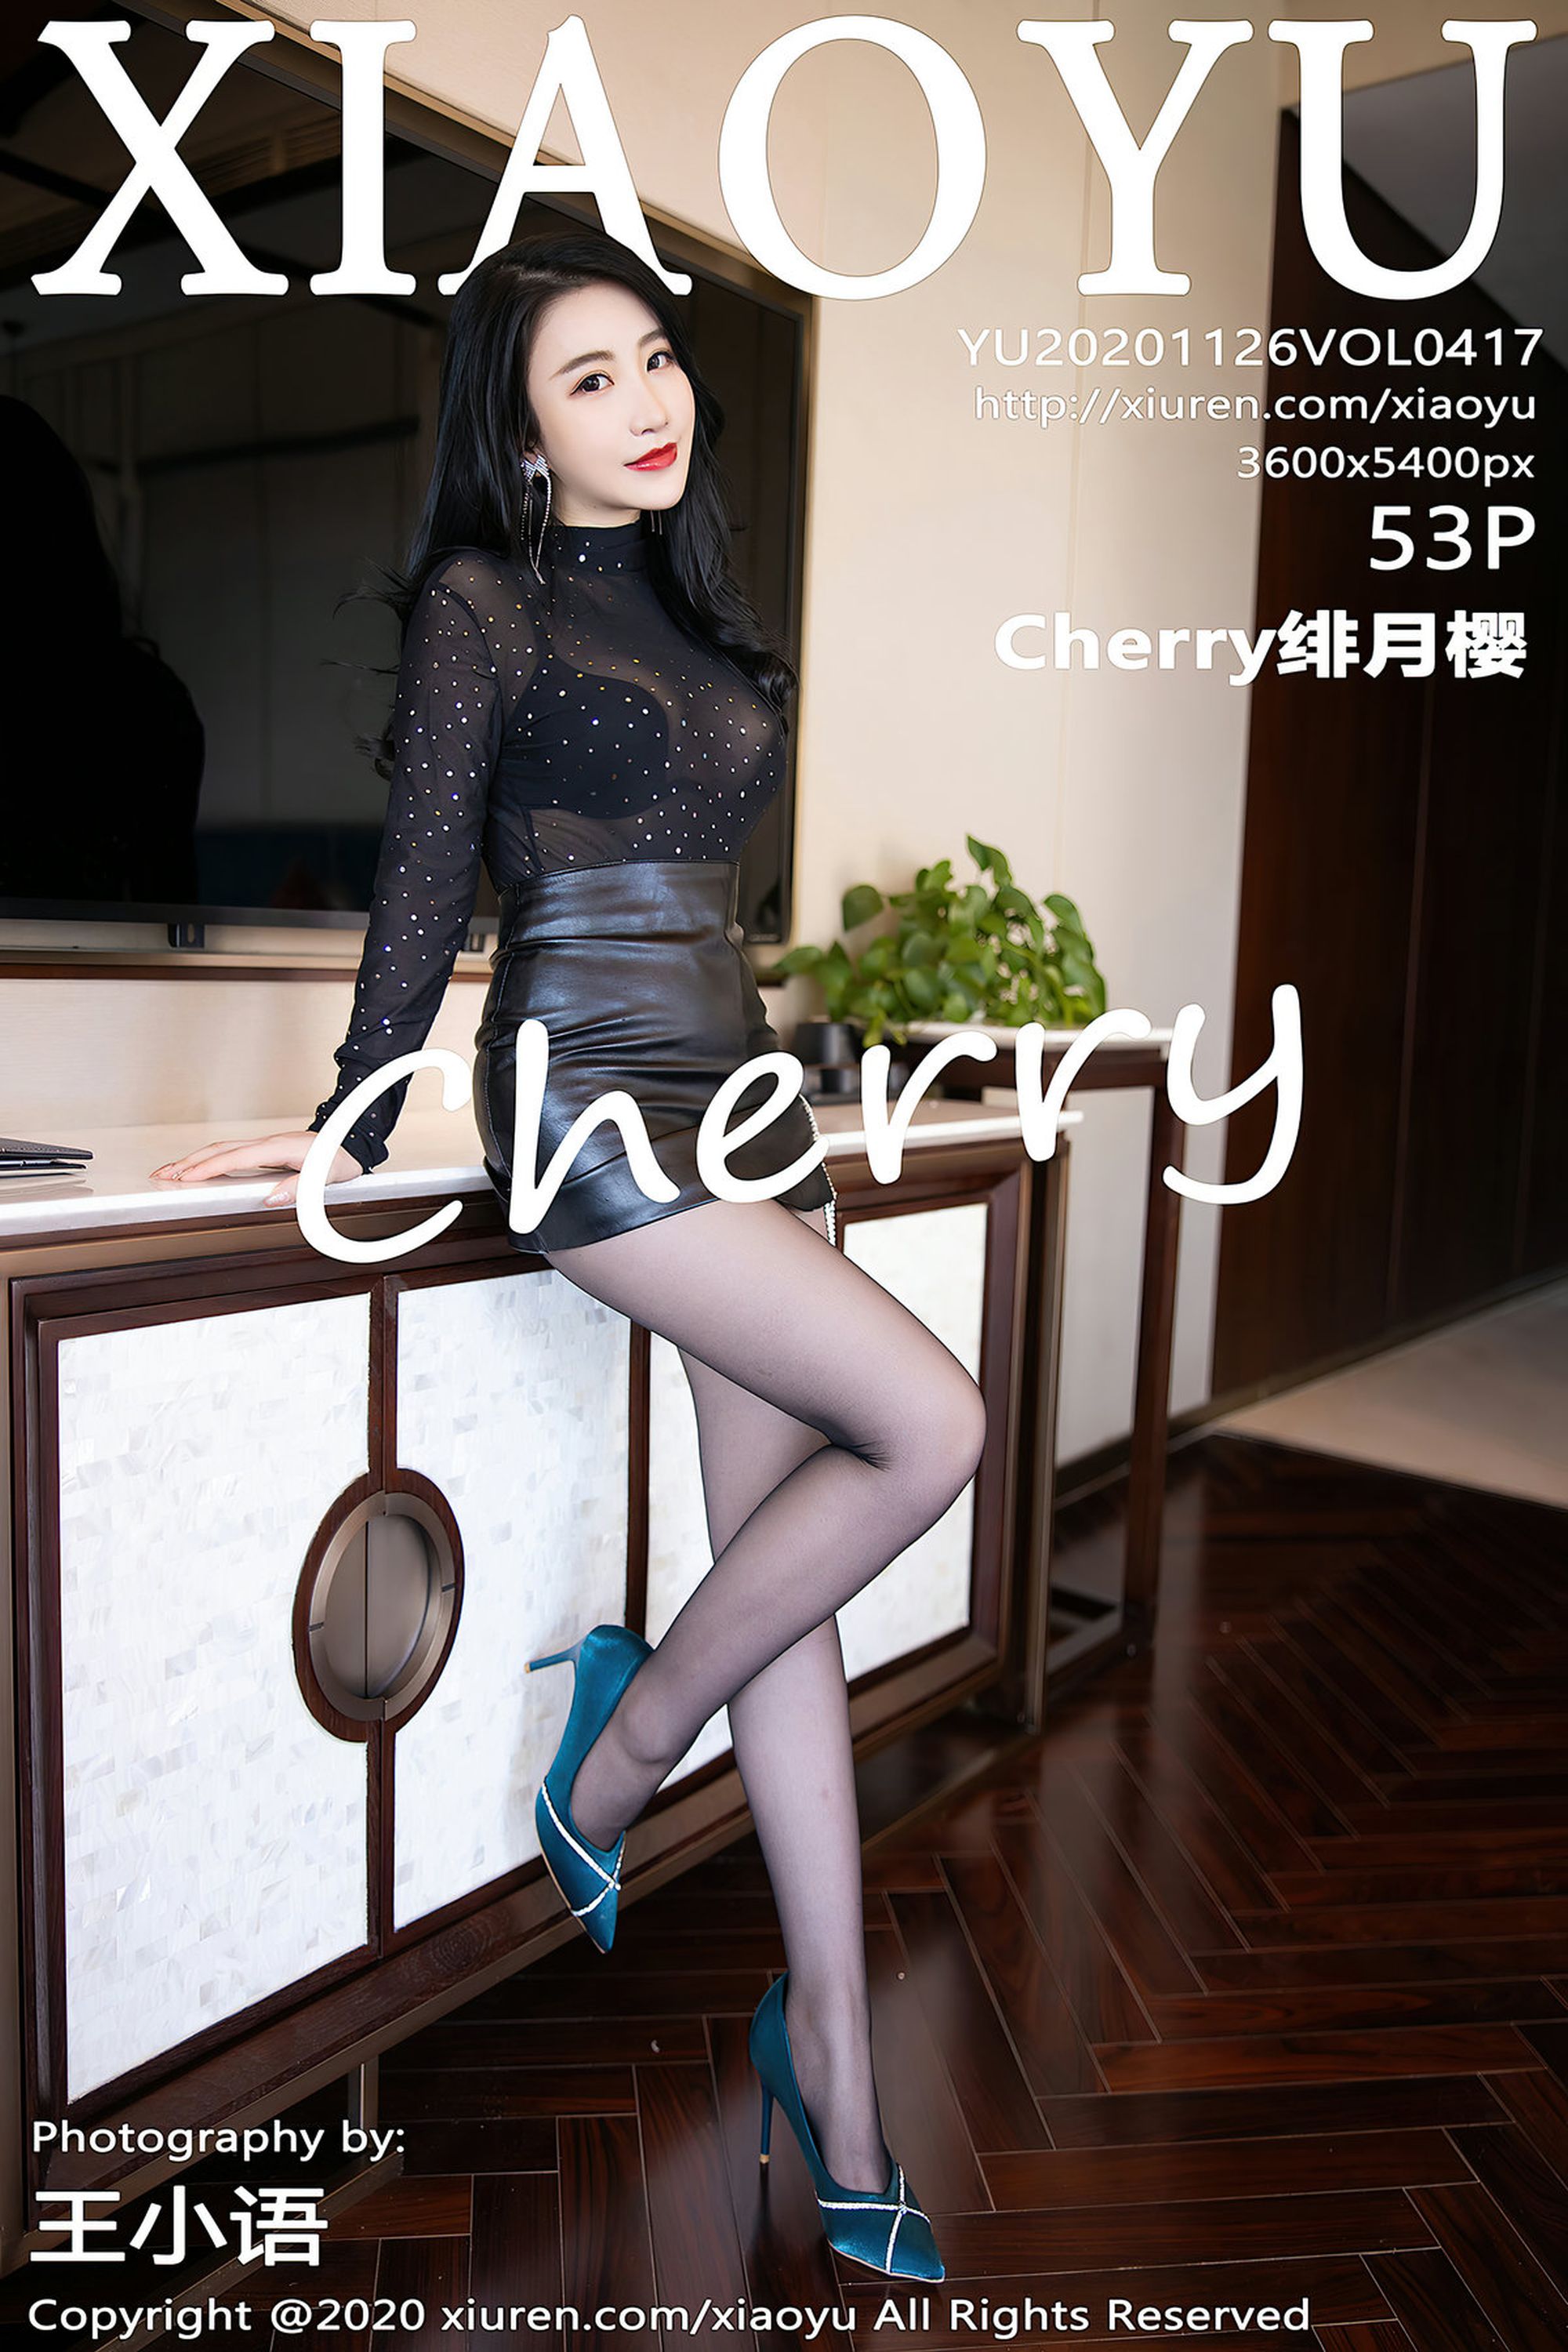 【XIAOYU畫語系列】2020.11.26 Vol.417 Cherry绯月櫻 完整版無水印寫真【54P】 - 貼圖 - 絲襪美腿 -